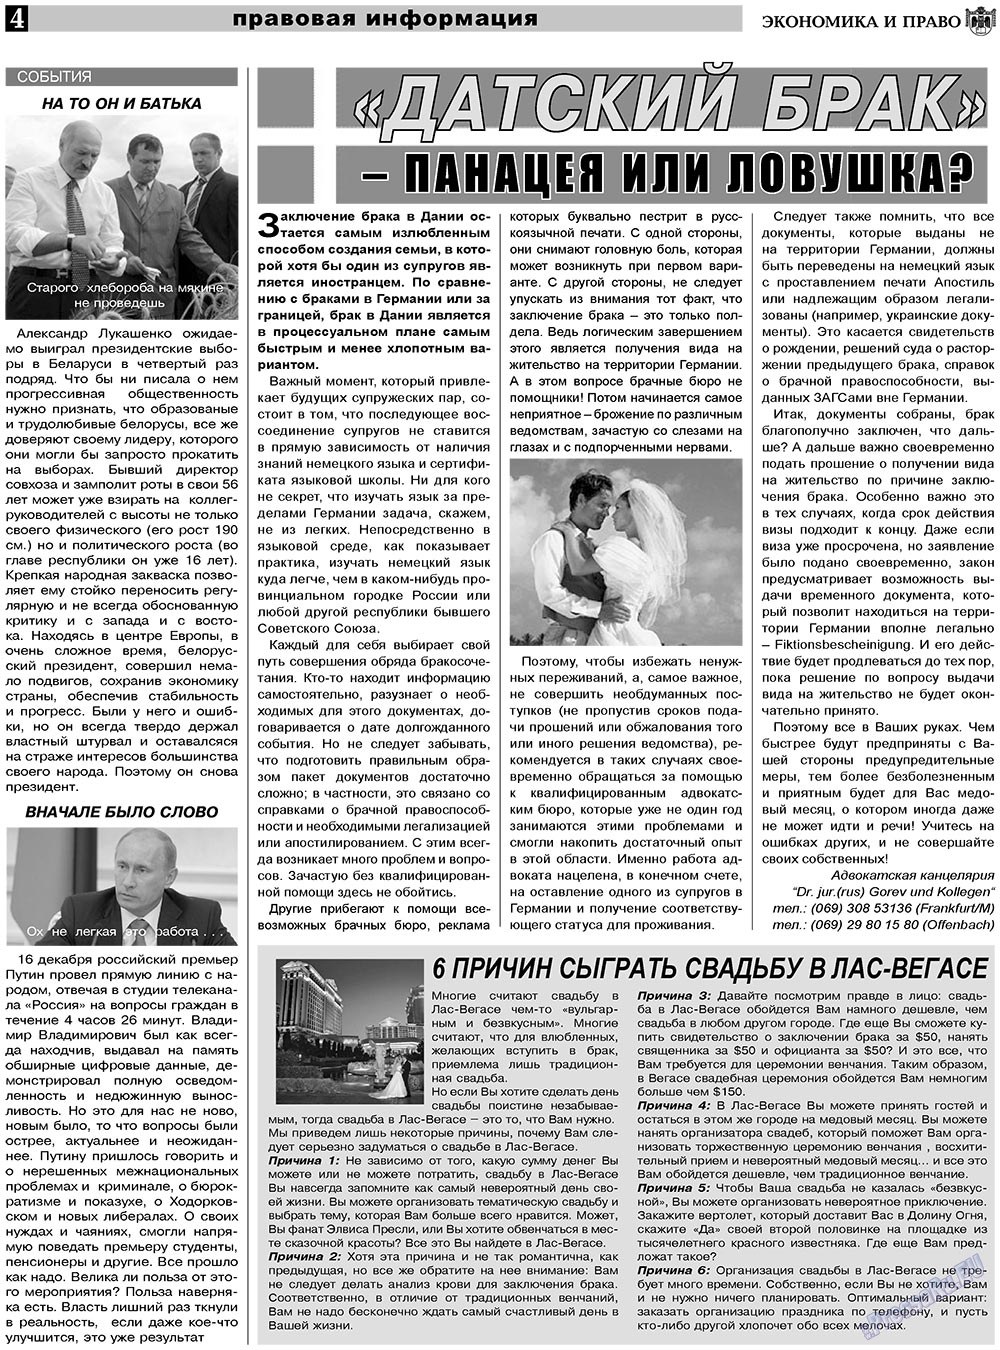 Экономика и право, газета. 2011 №1 стр.4